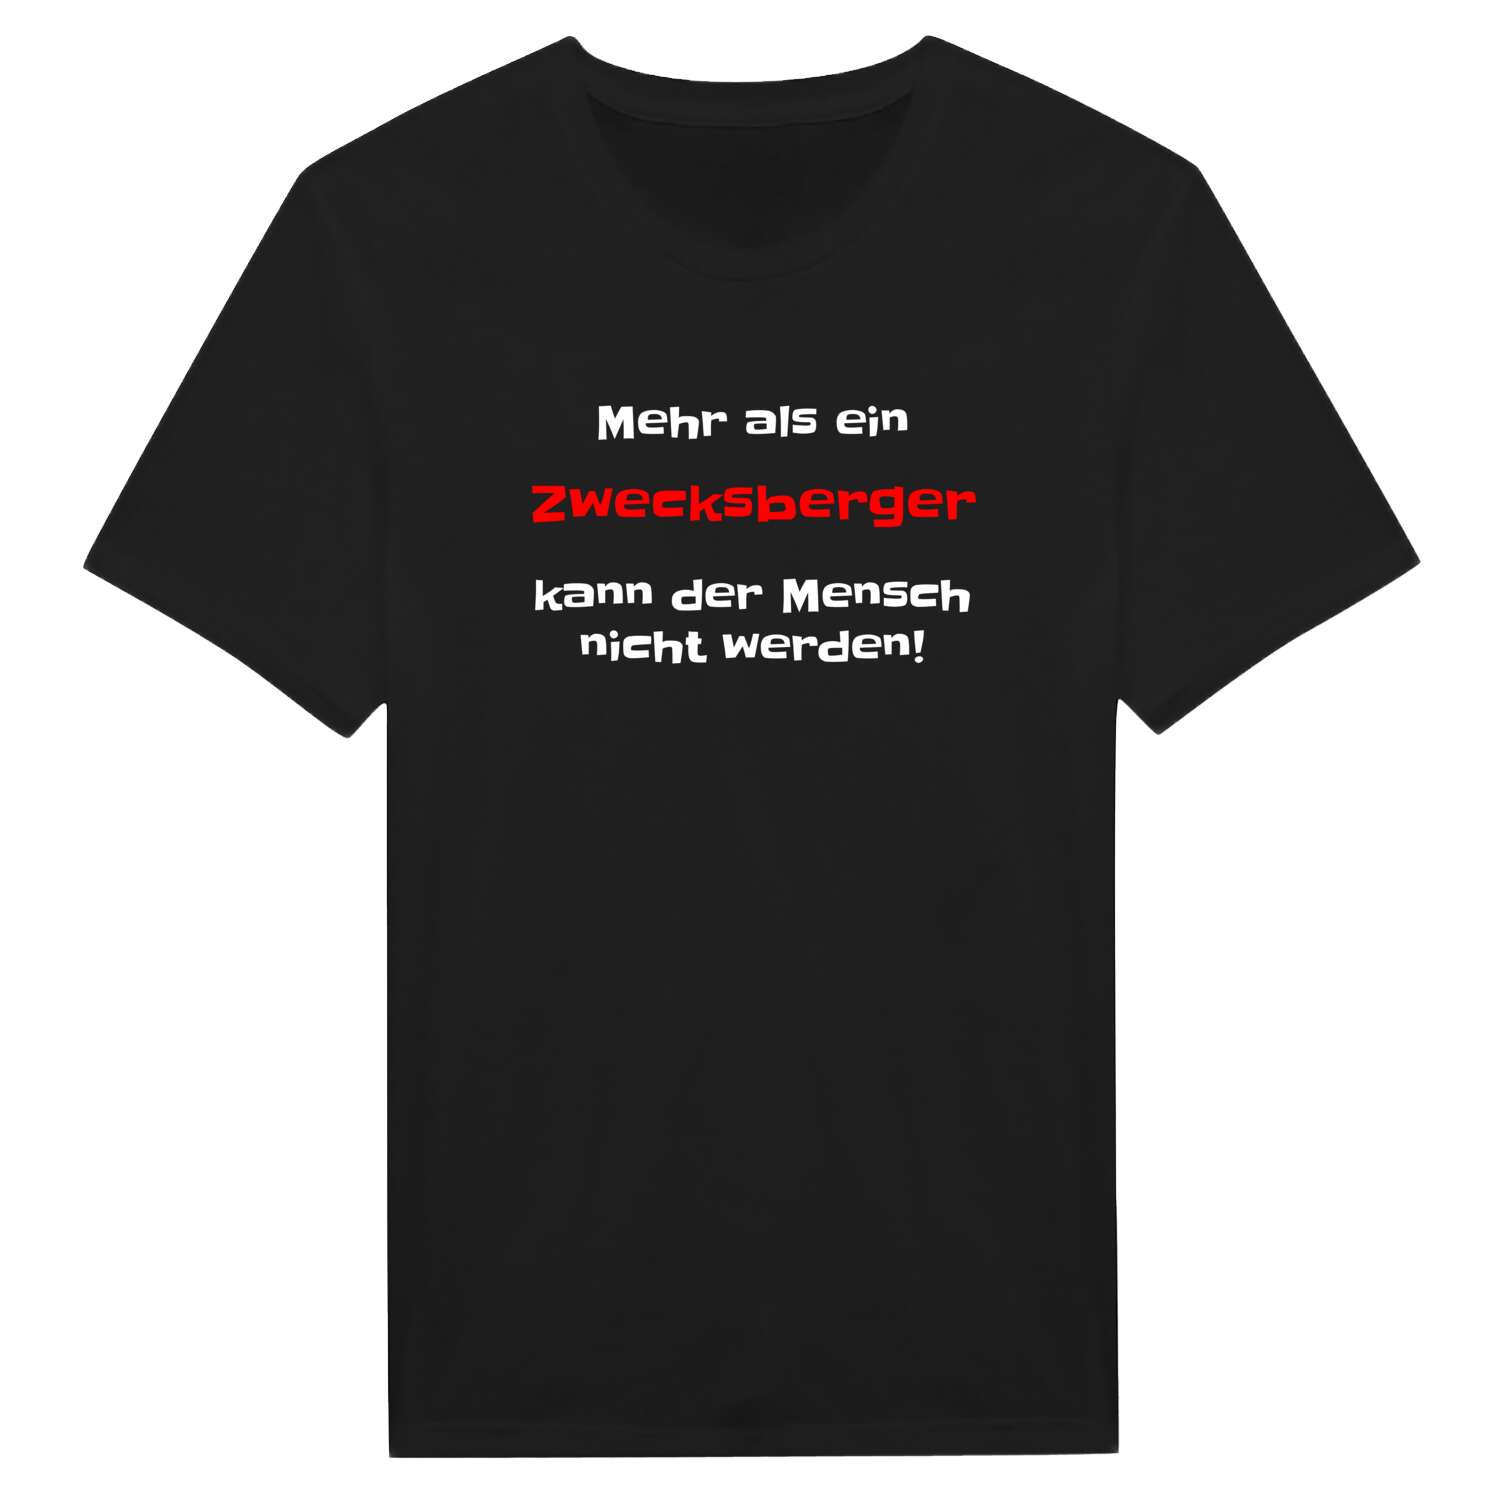 Zwecksberg T-Shirt »Mehr als ein«